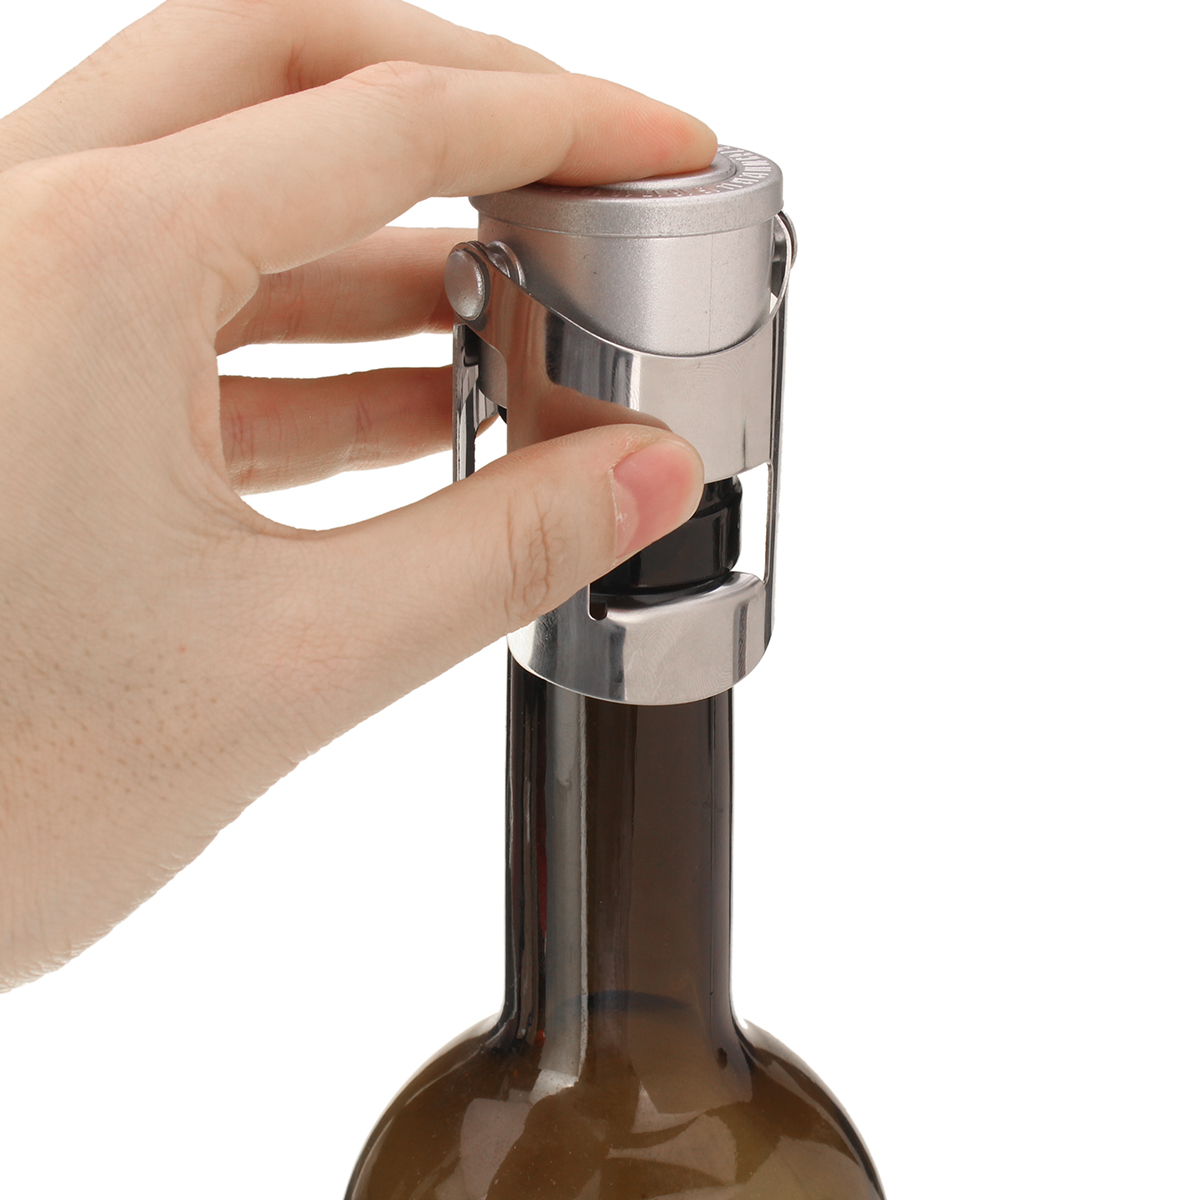 Stainless-Steel-Champag-ne-Stopper-Sparkling-Bottles-Plug-Sealer-Saver-Stopper-1351904